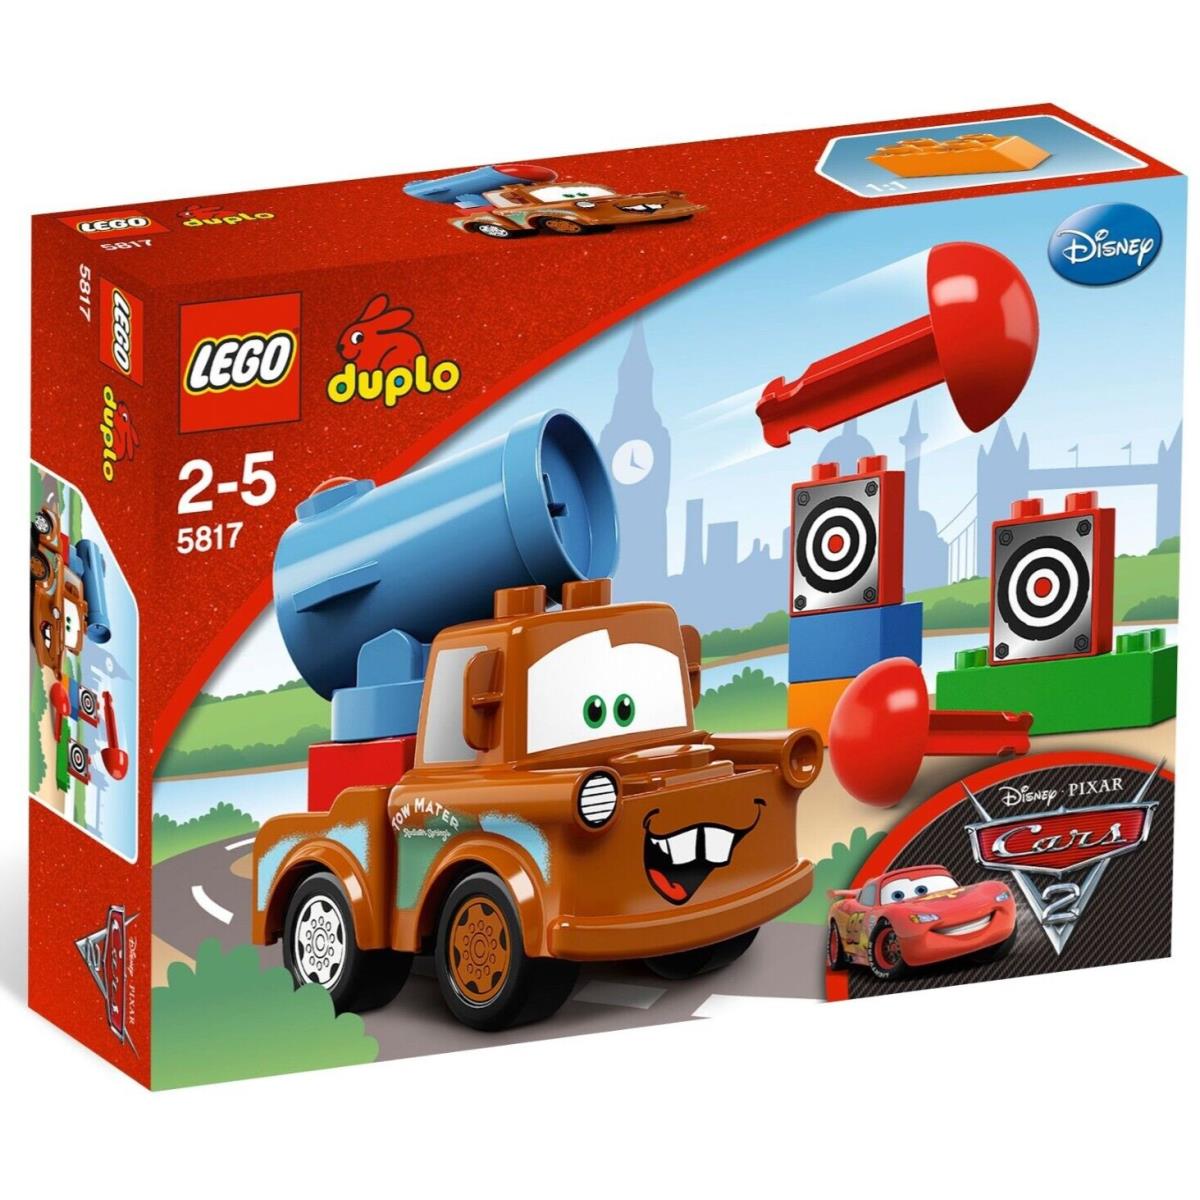 Lego Duplo Disney Pixar Cars 2 5817 Agent Mater